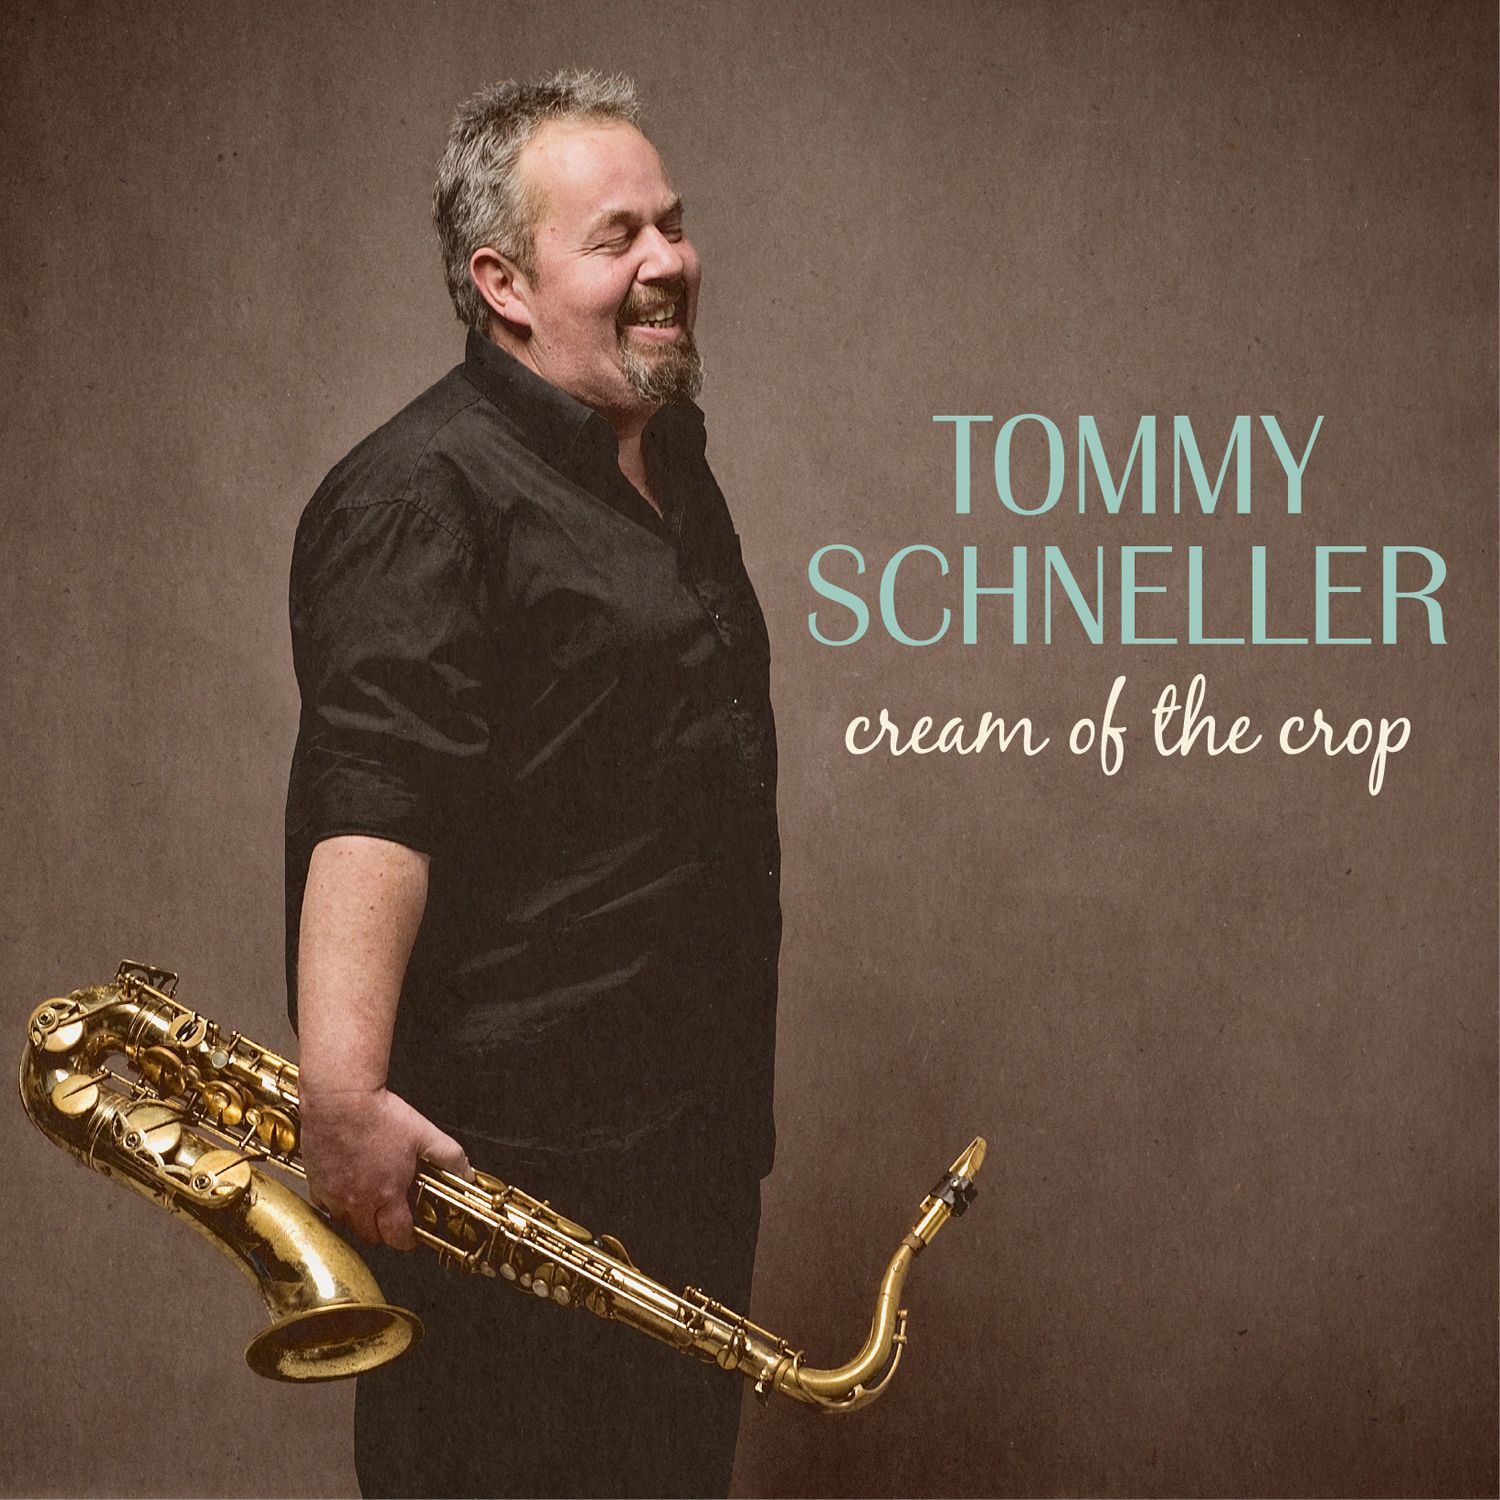 Schneller, Tommy - Cream of the crop